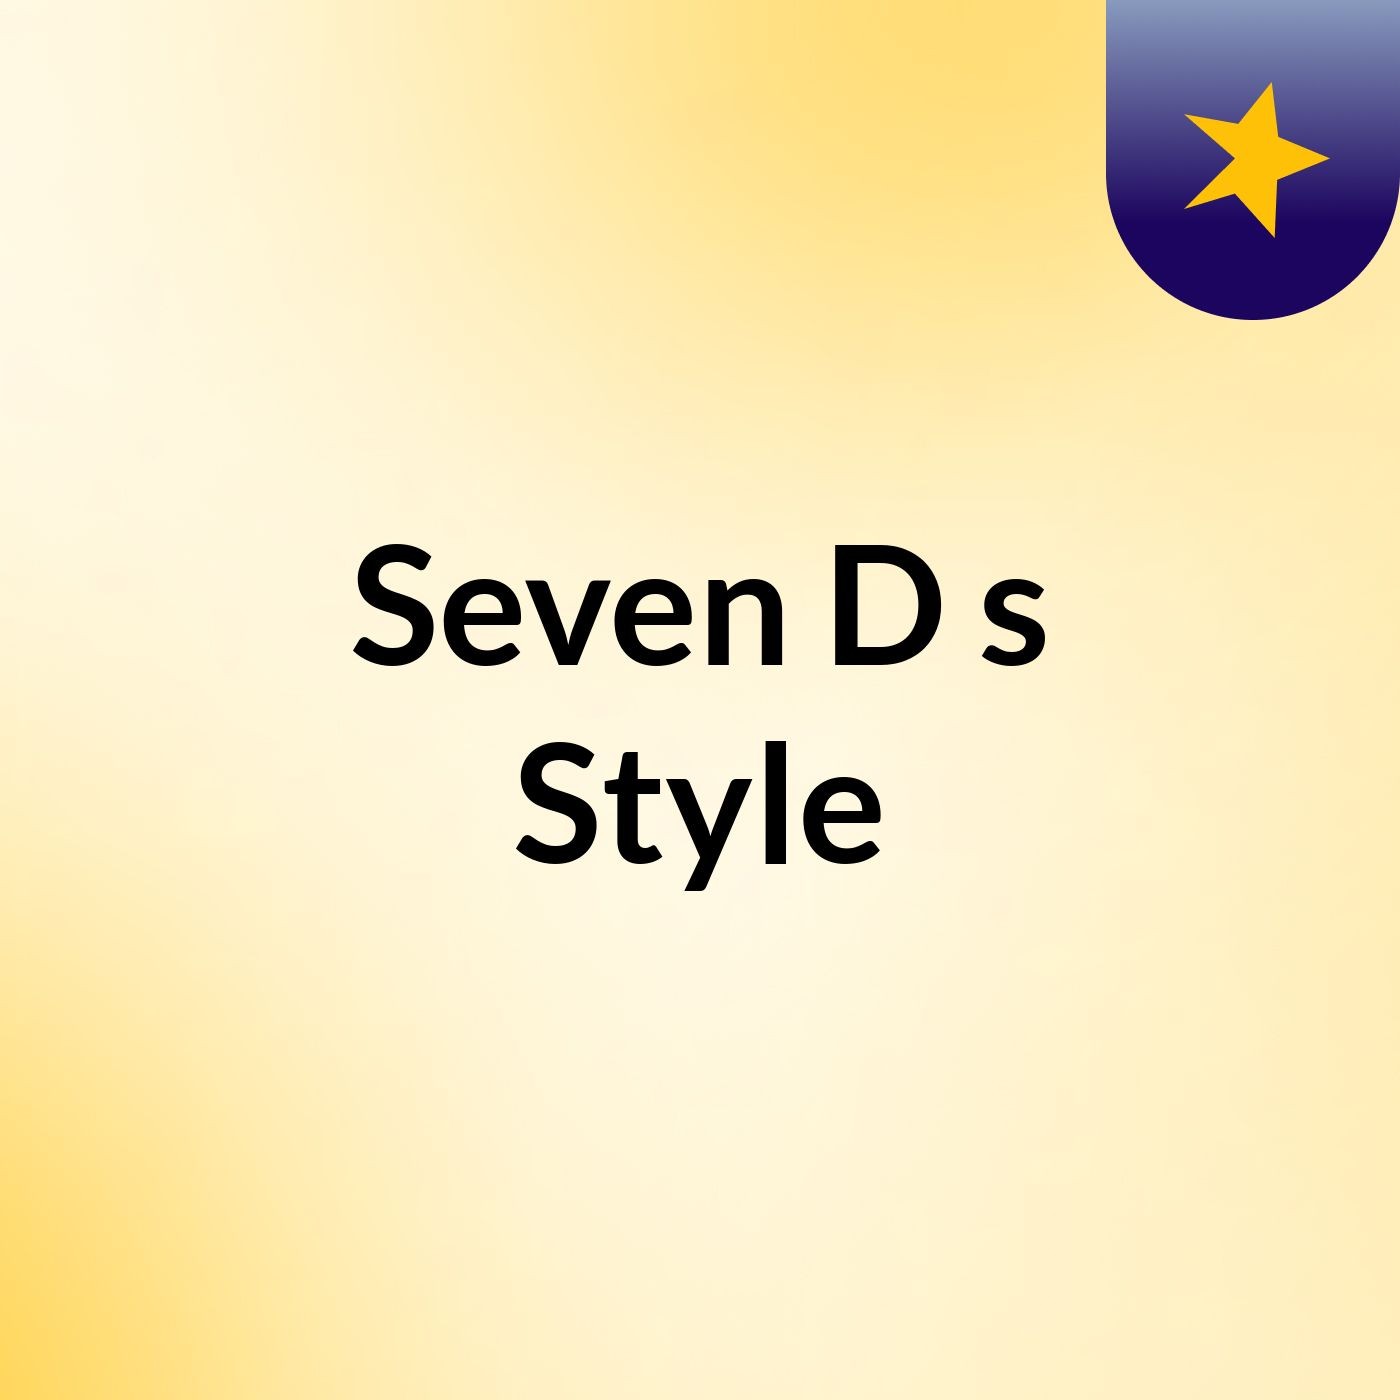 Seven D's Style